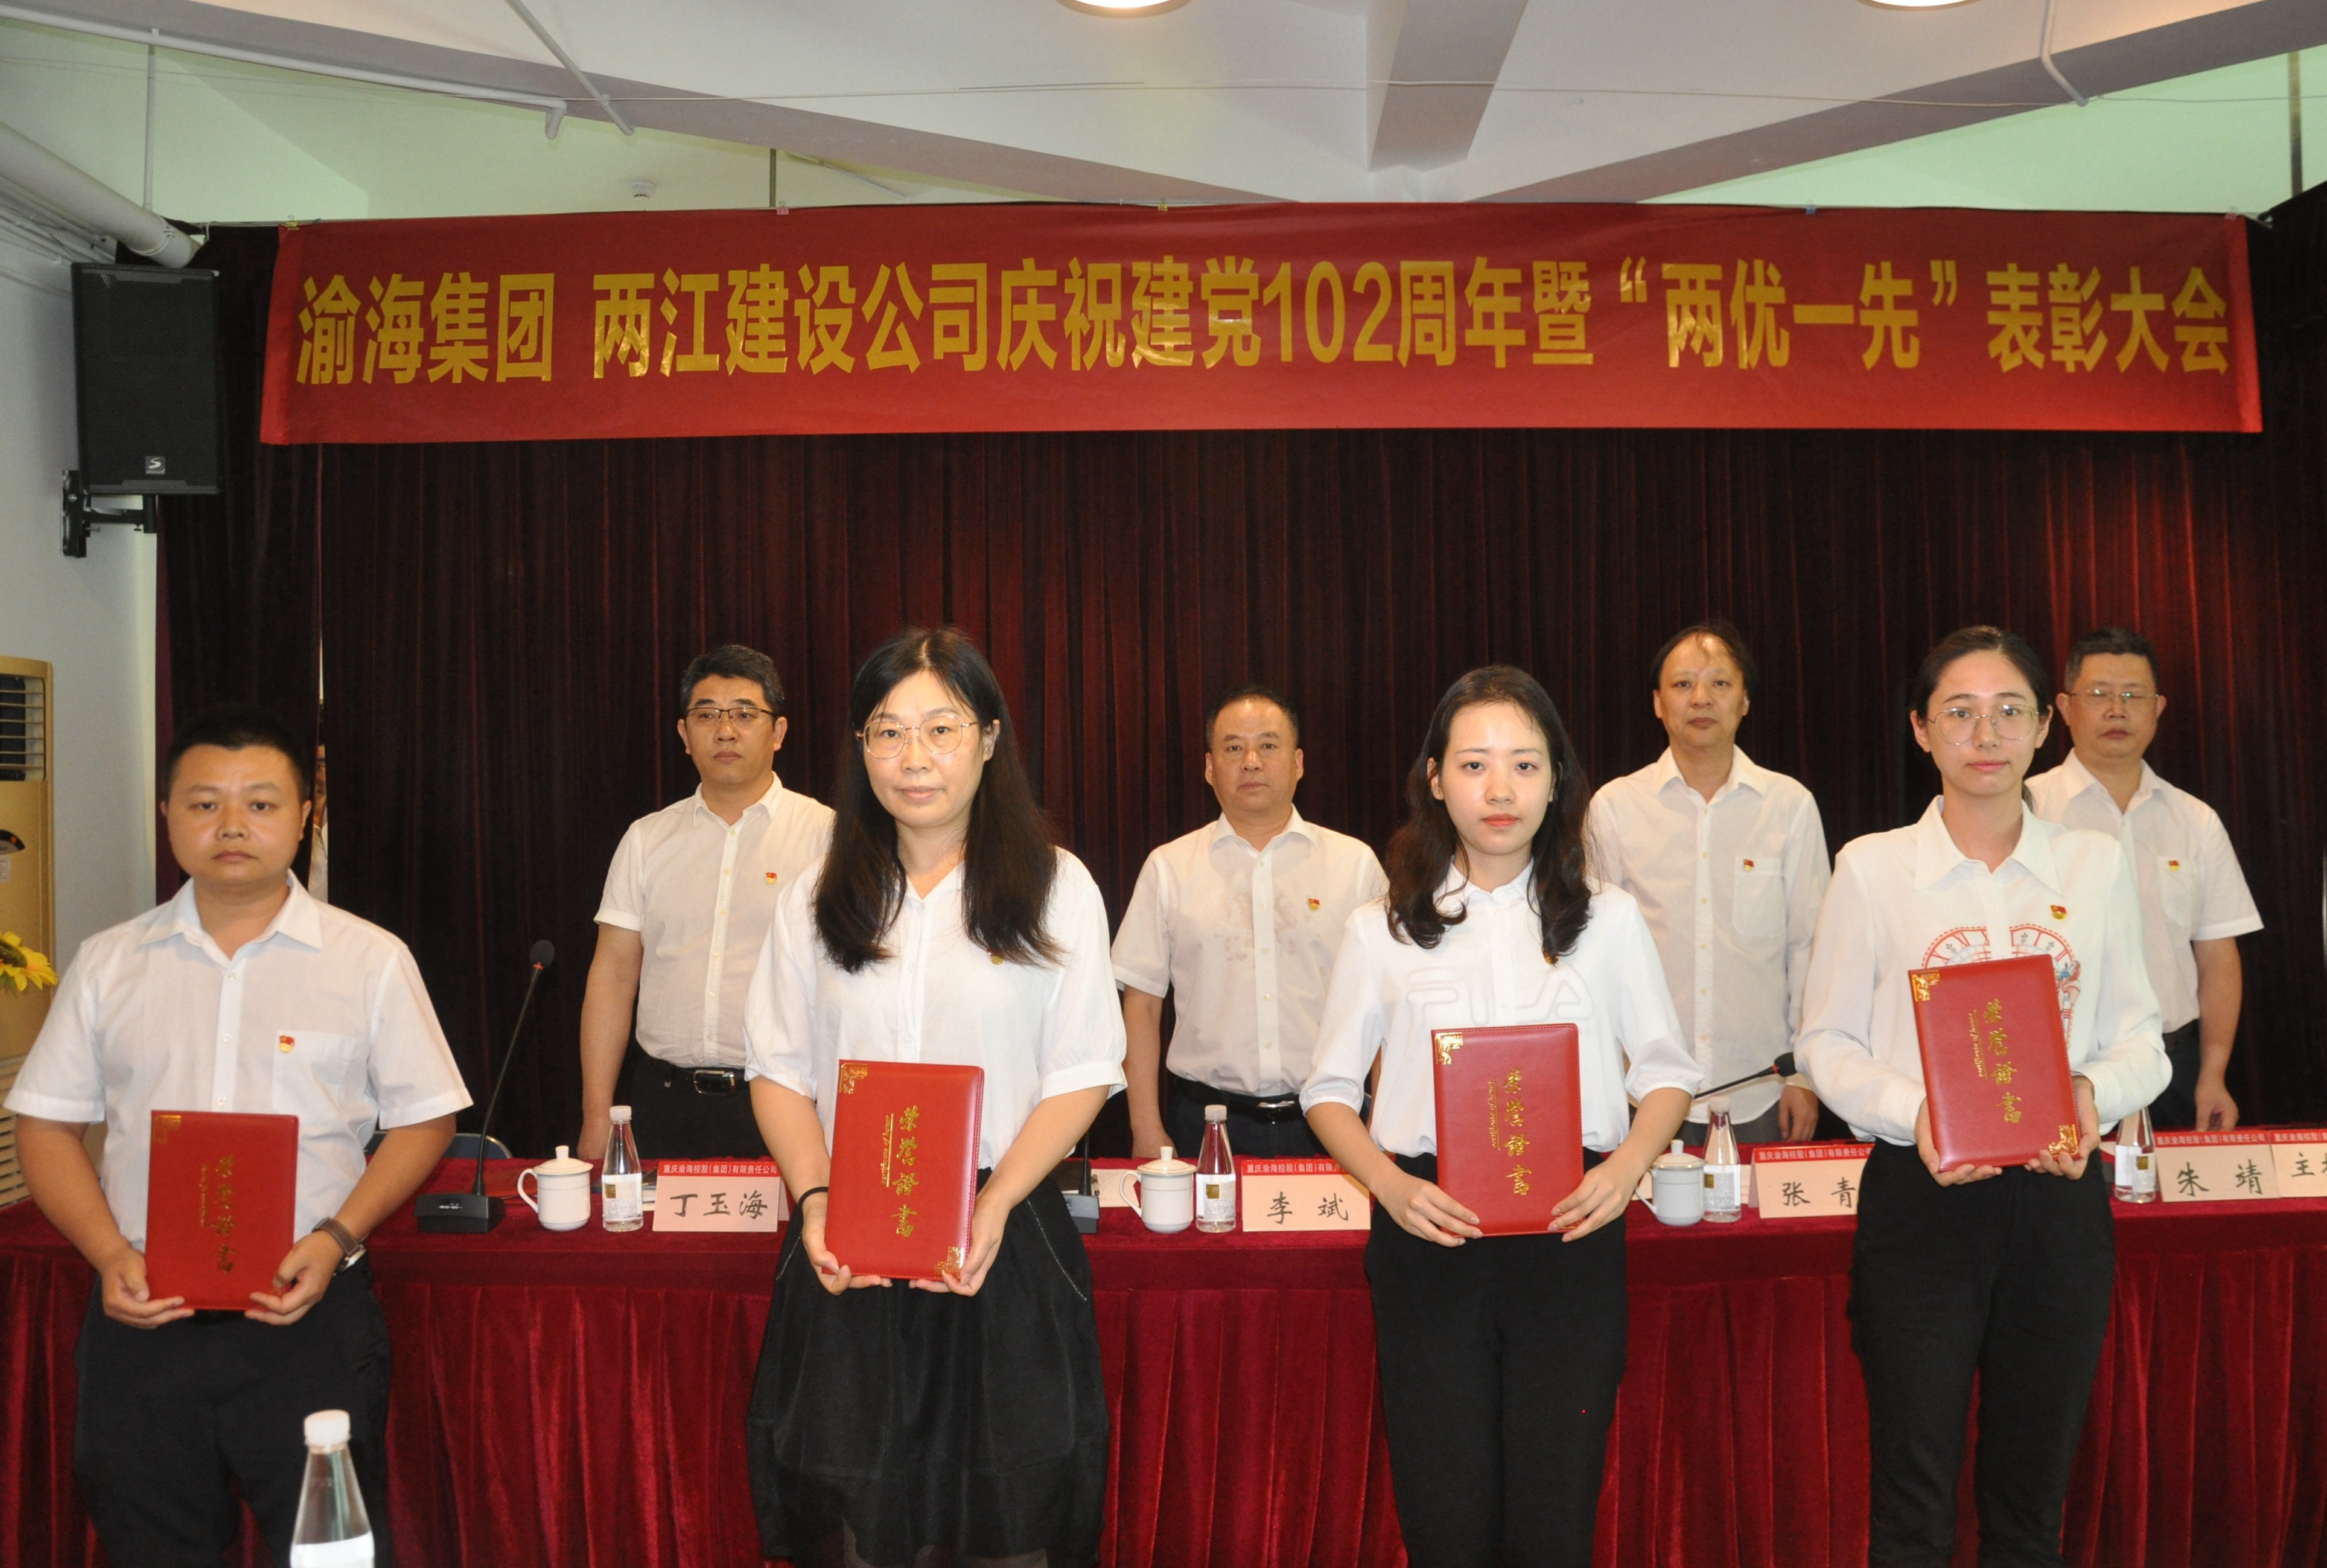 集团召开庆祝中国共产党成立102周年暨 “两优一先”表彰会